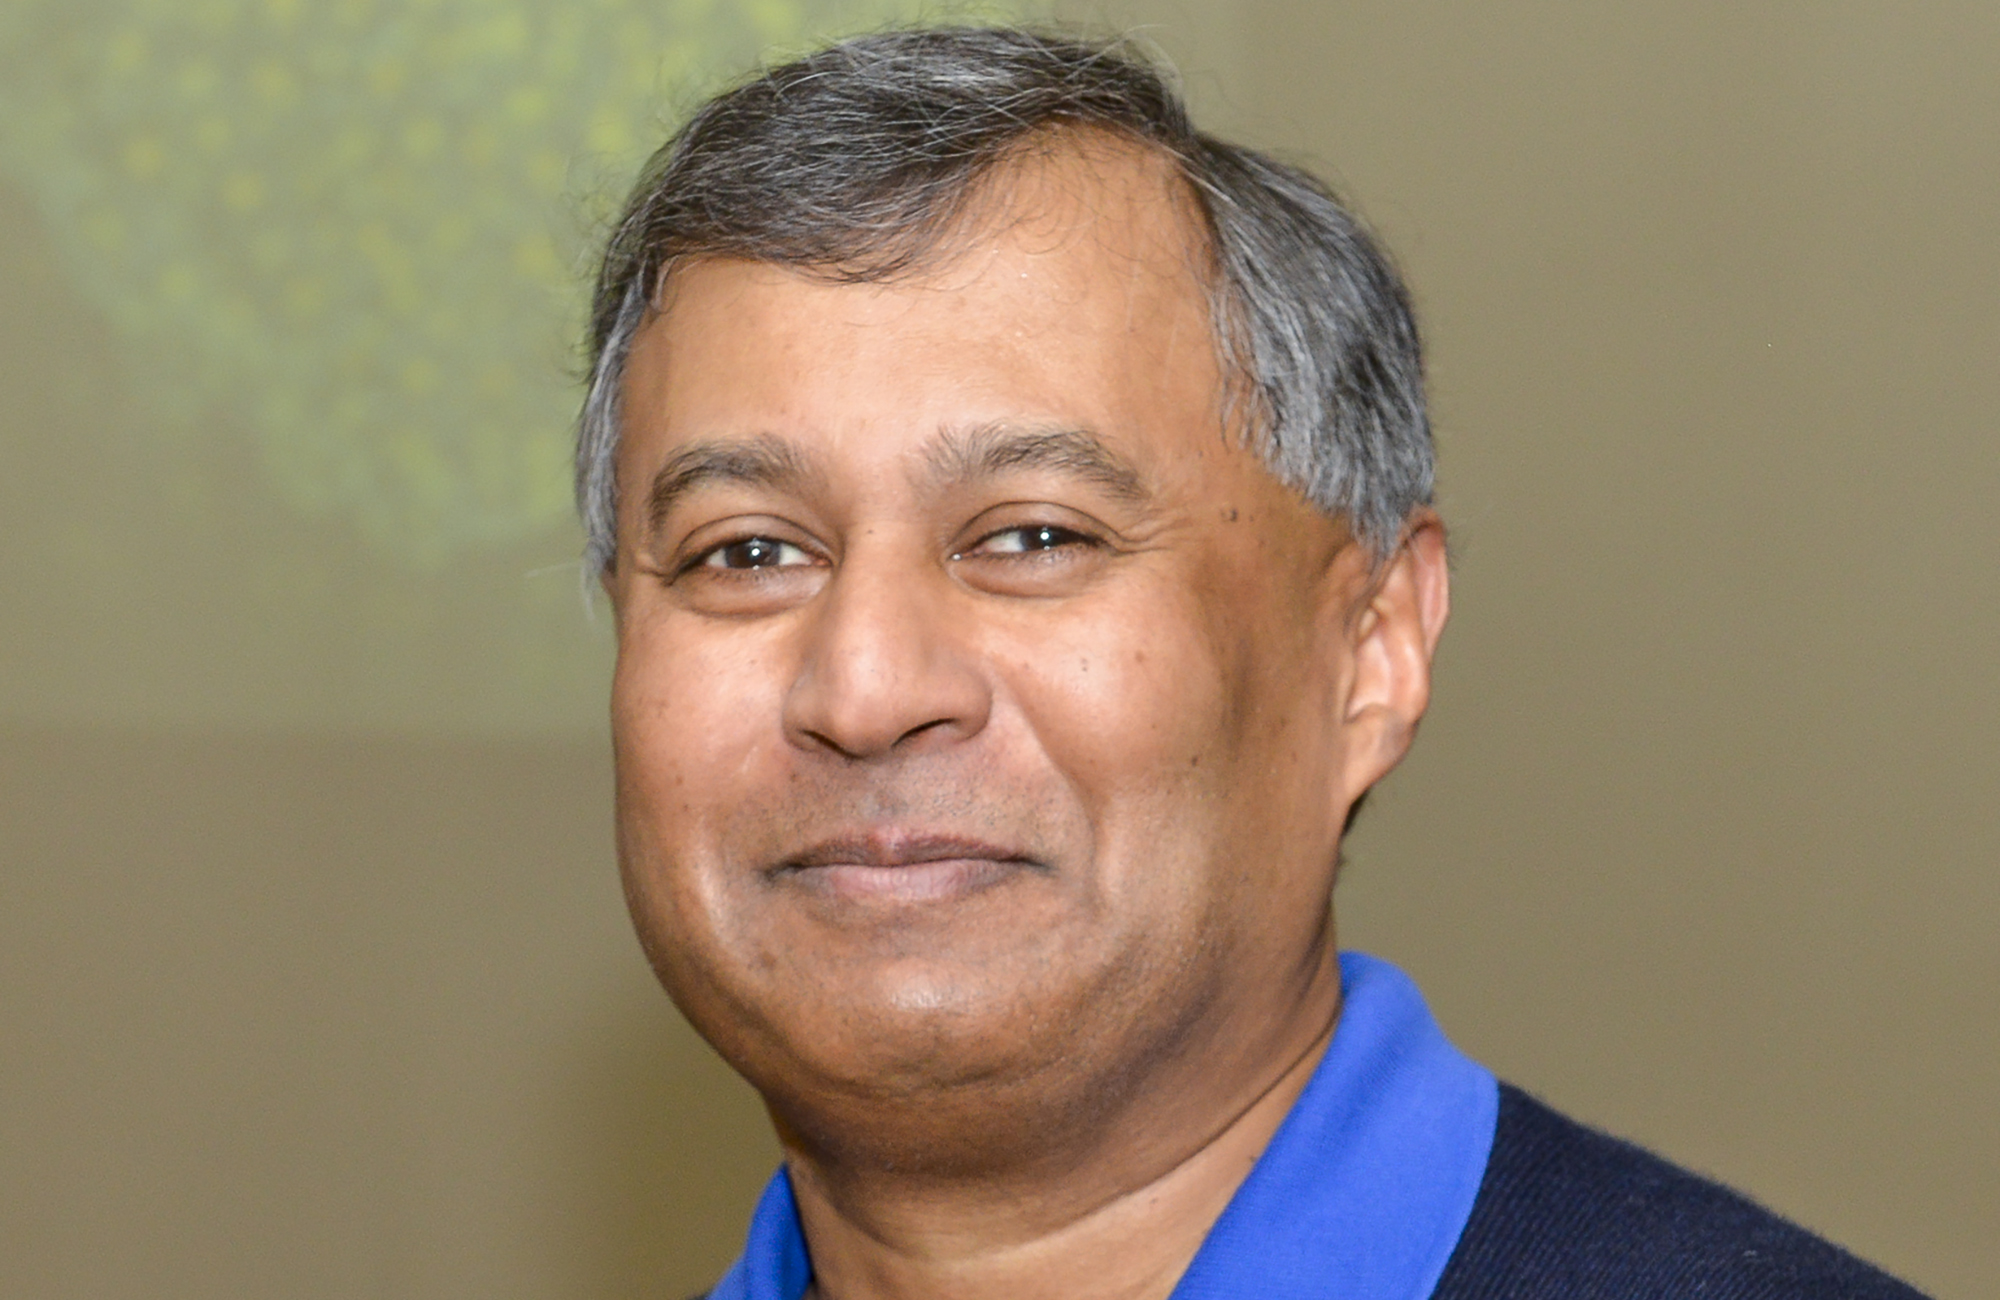 ジェレミ・グナワデナ(Jeremy Gunawardena)(Trinity 1977)ハーバード大学医学大学院(Harvard Medical School)助教授